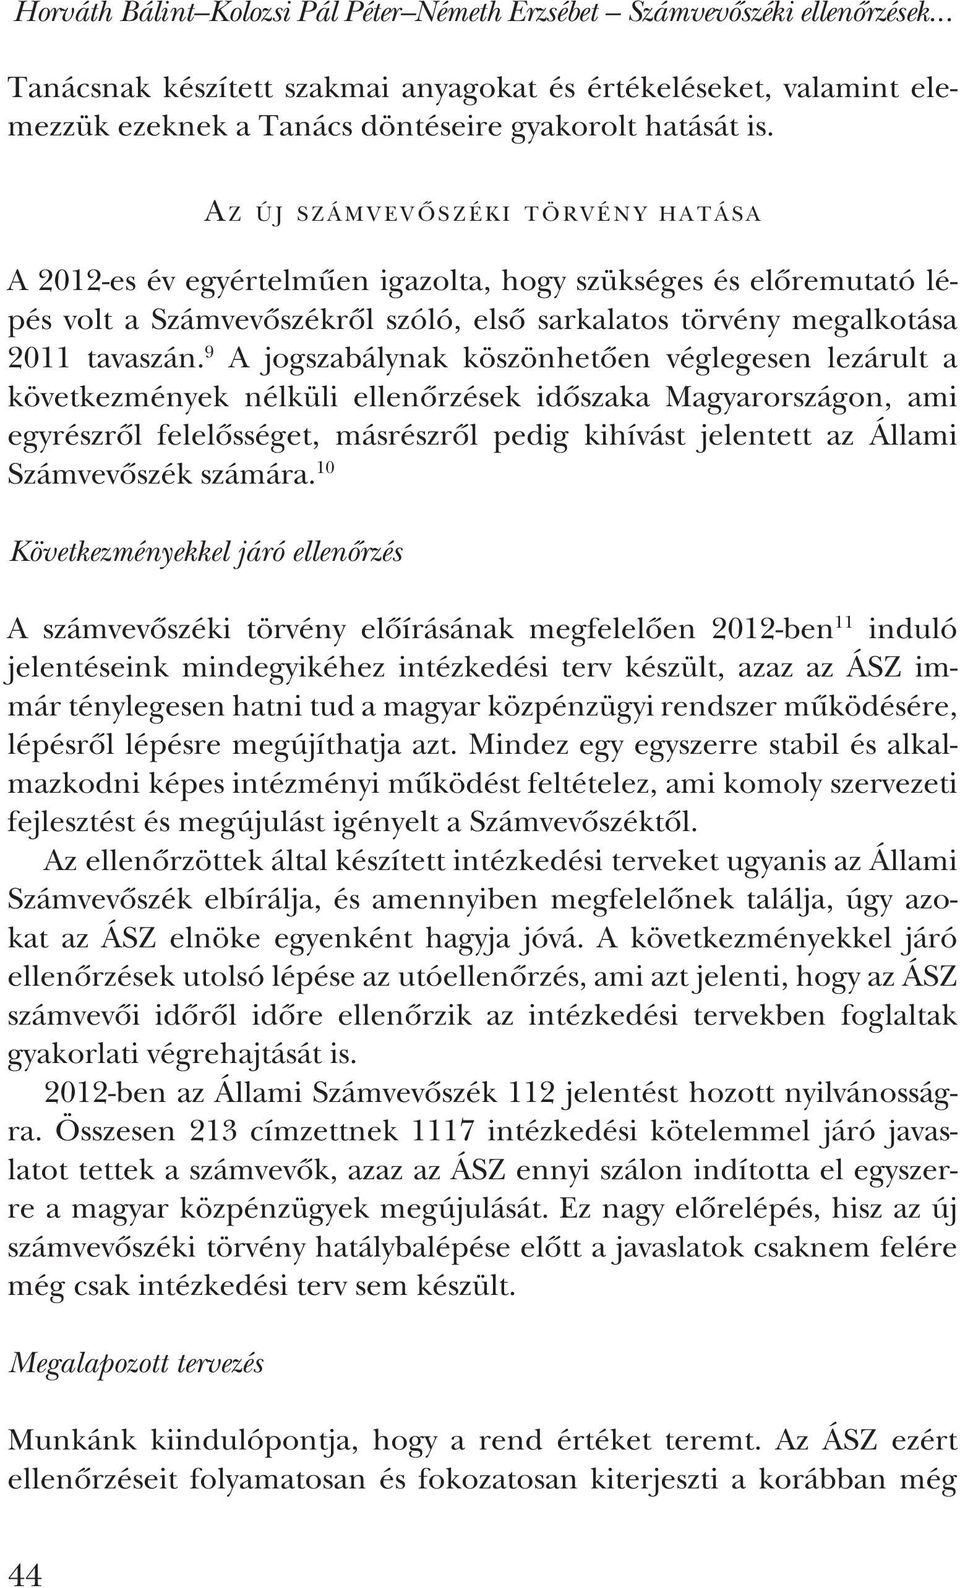 A z új számvevõszéki törvény hatása A 2012-es év egyértelmûen igazolta, hogy szükséges és elõremutató lépés volt a Számvevõszékrõl szóló, elsõ sarkalatos törvény megalkotása 2011 tavaszán.